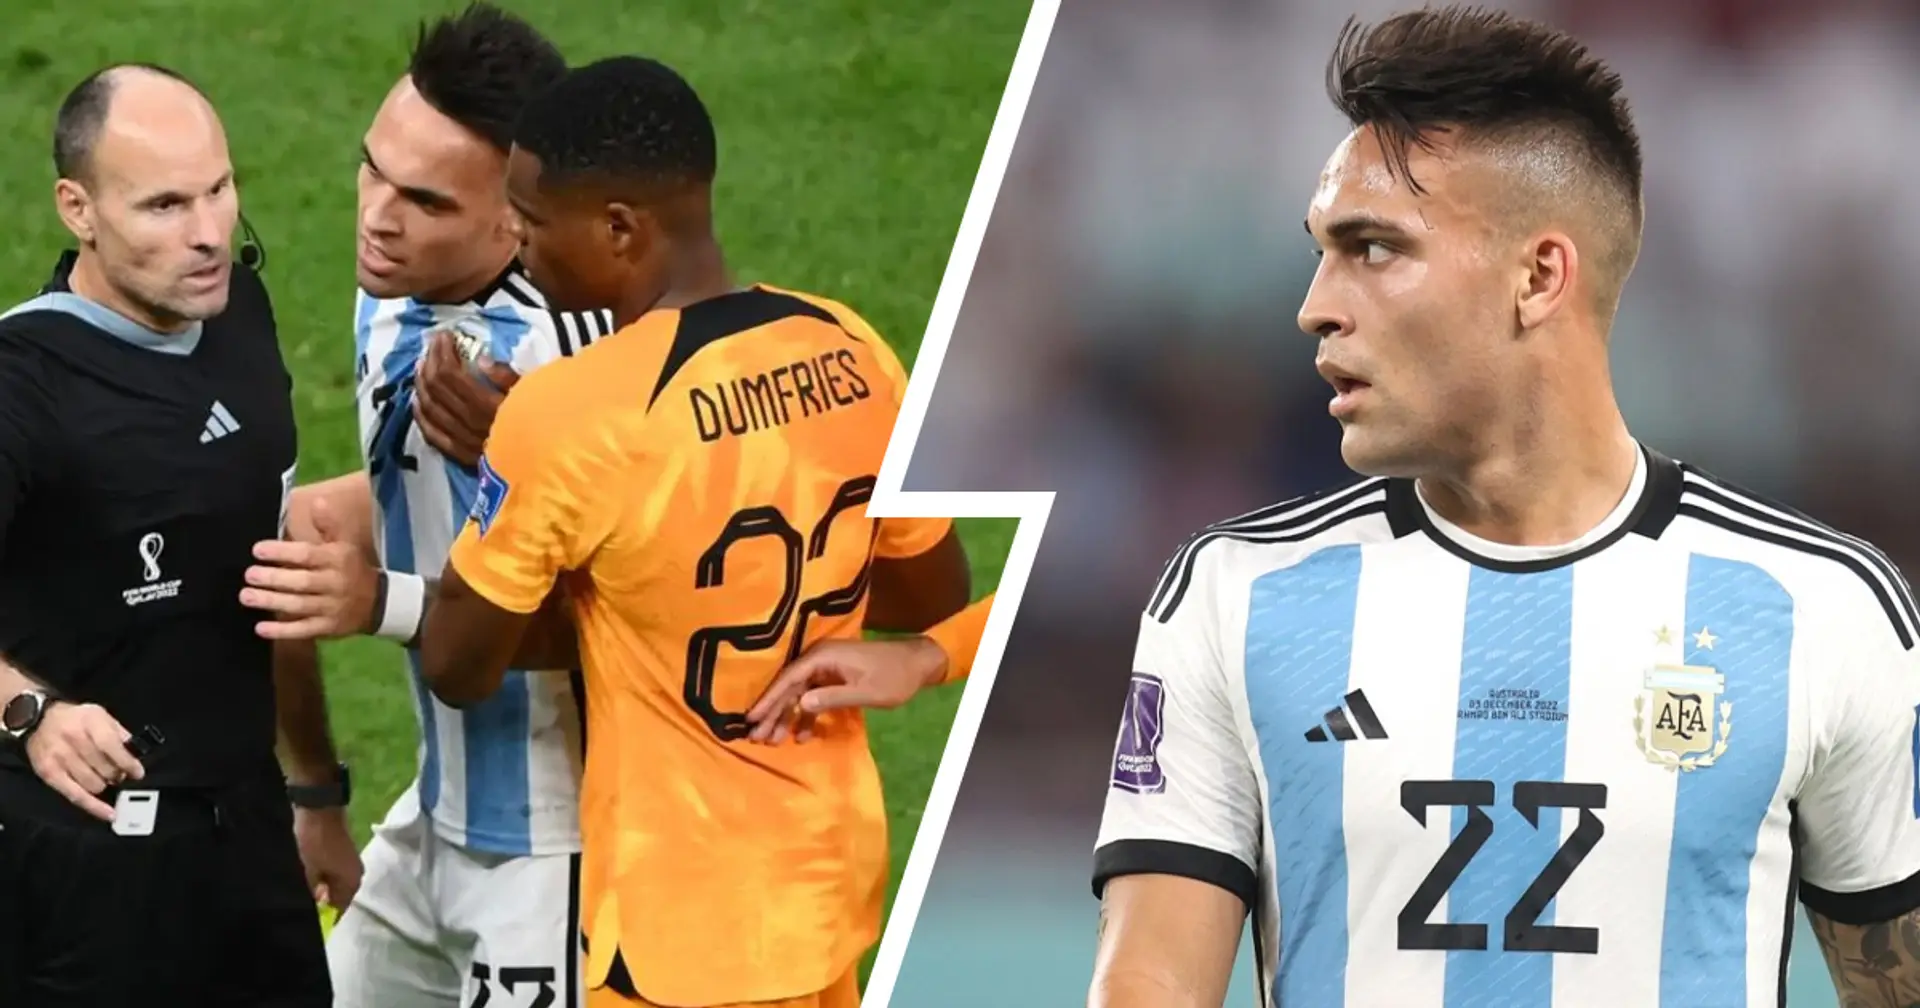 Olanda-Argentina ha lasciato strascichi, l'Inter vuole chiarire: fissato il confronto tra Lautaro e Dumfries